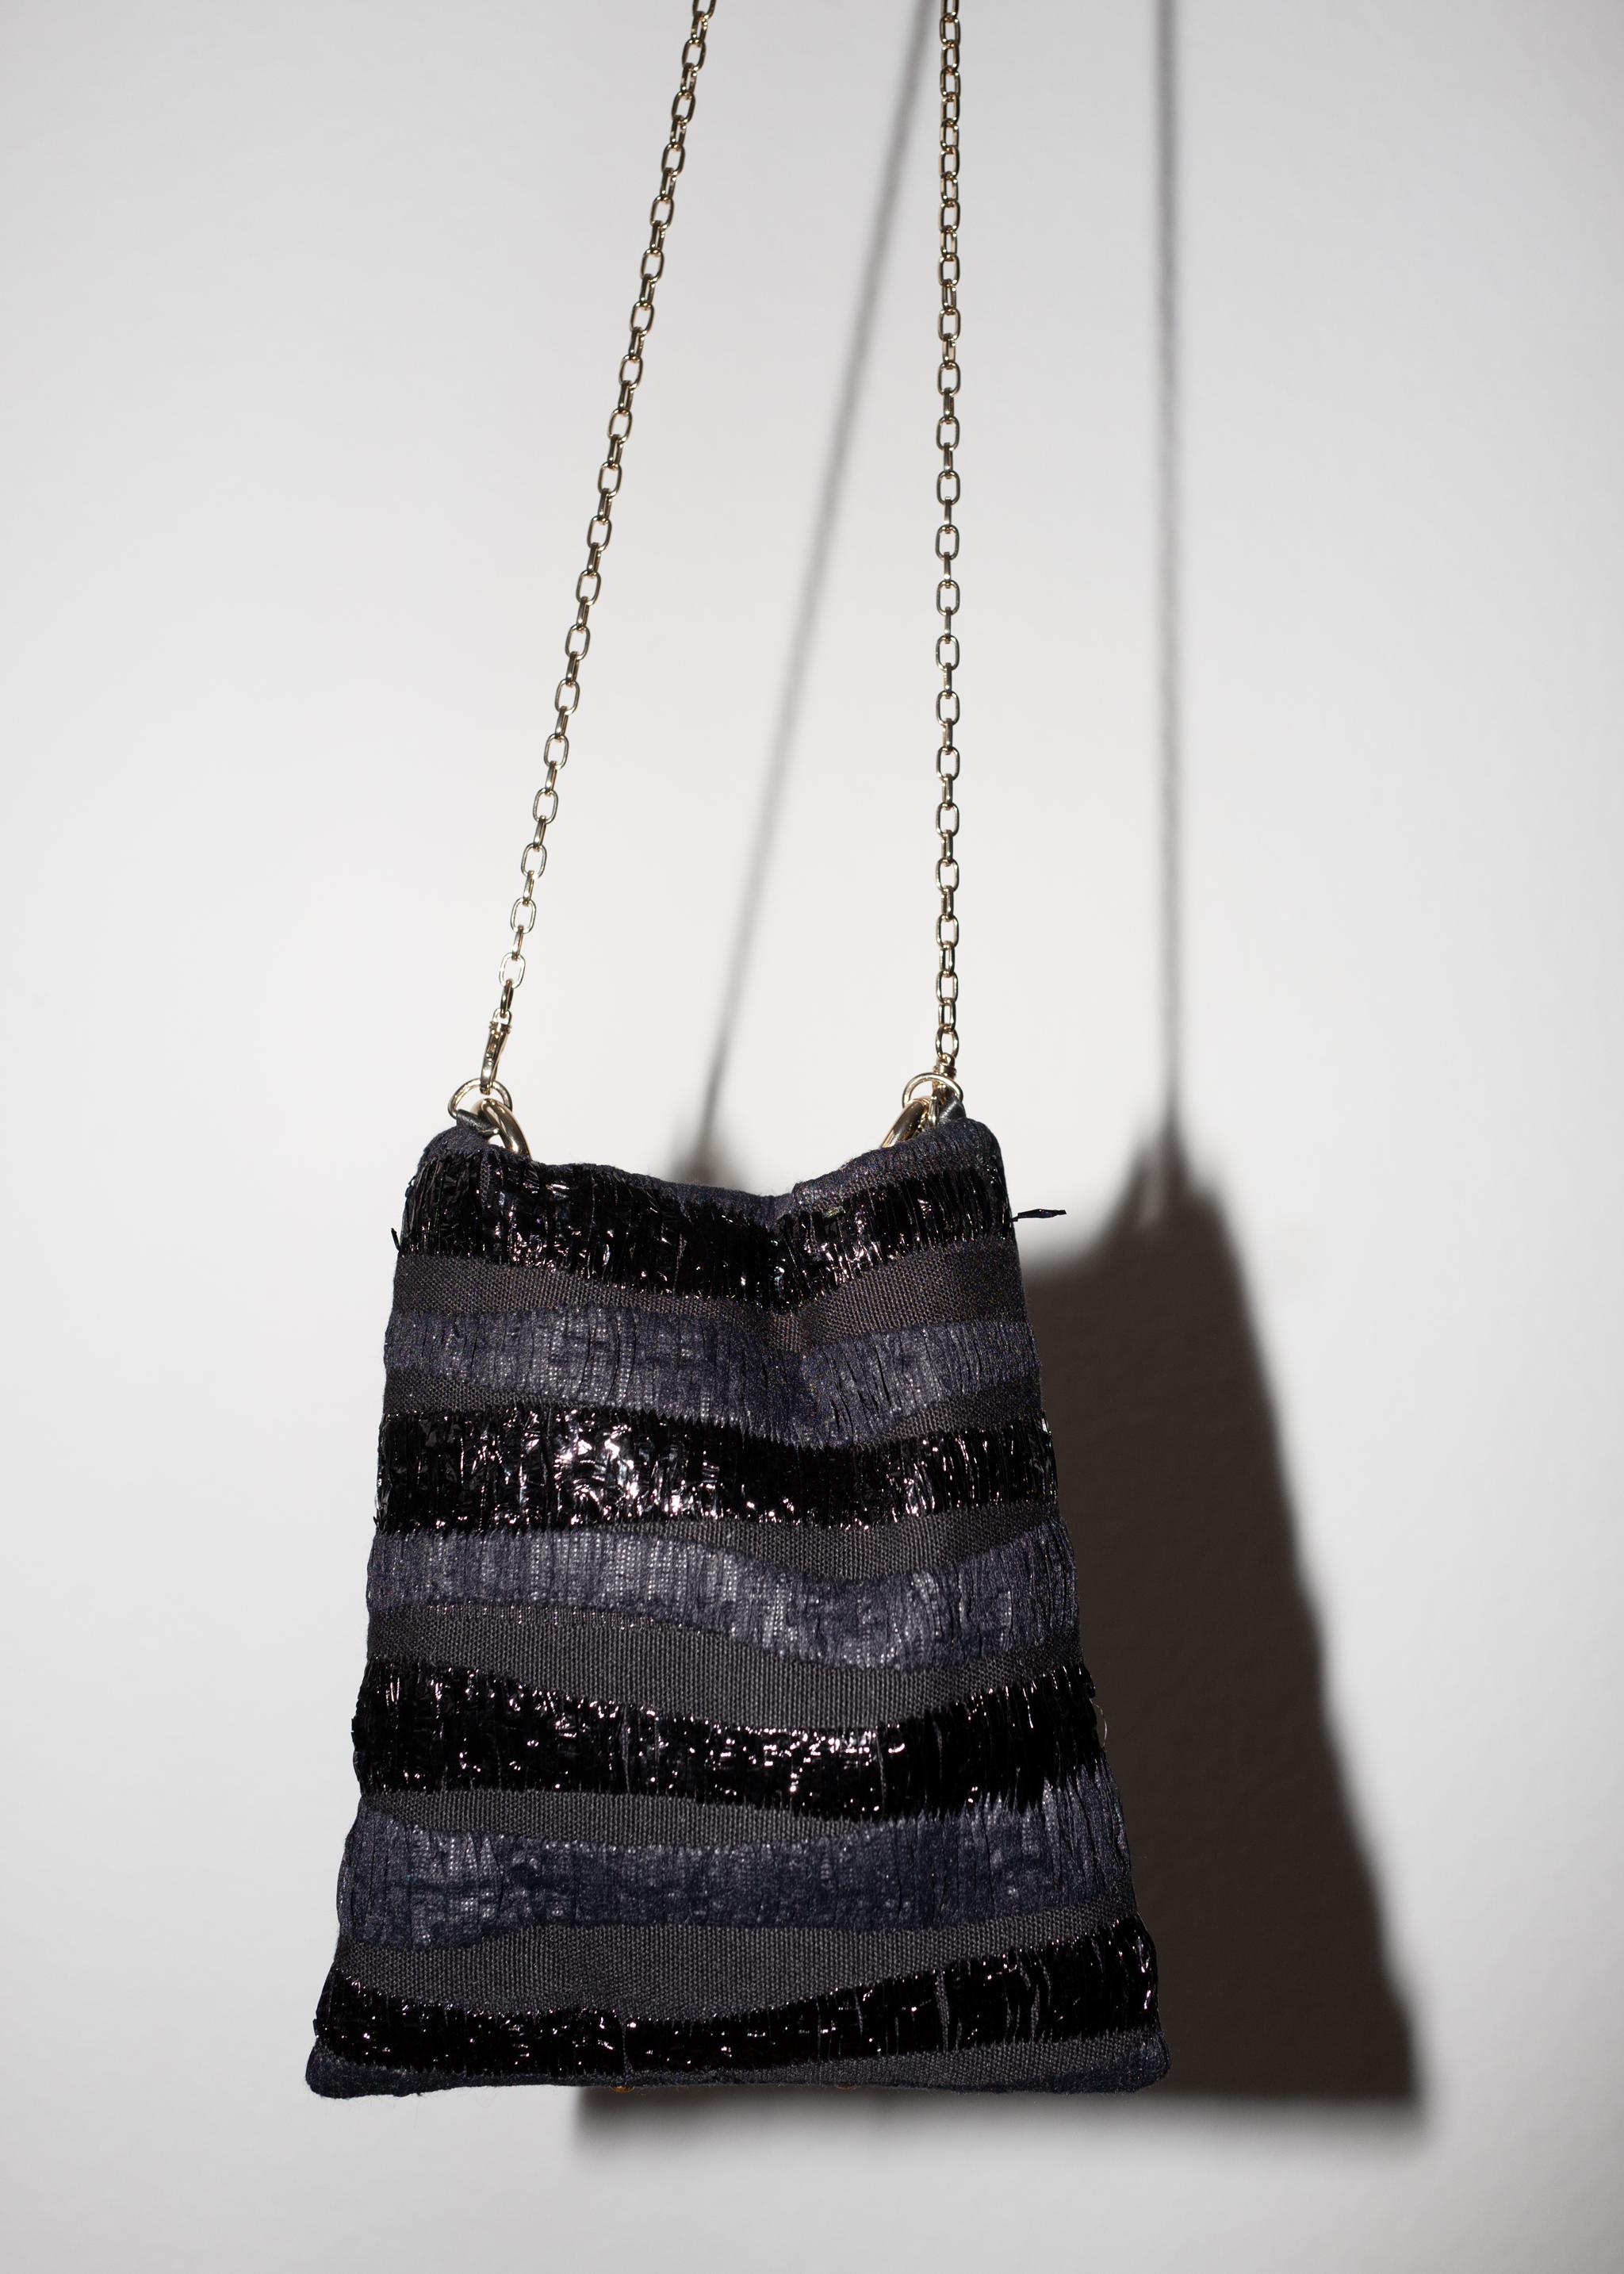 Crystal Swarovski Embellishment Black French Tweed Gold Chain Shoulder Bag For Sale 1